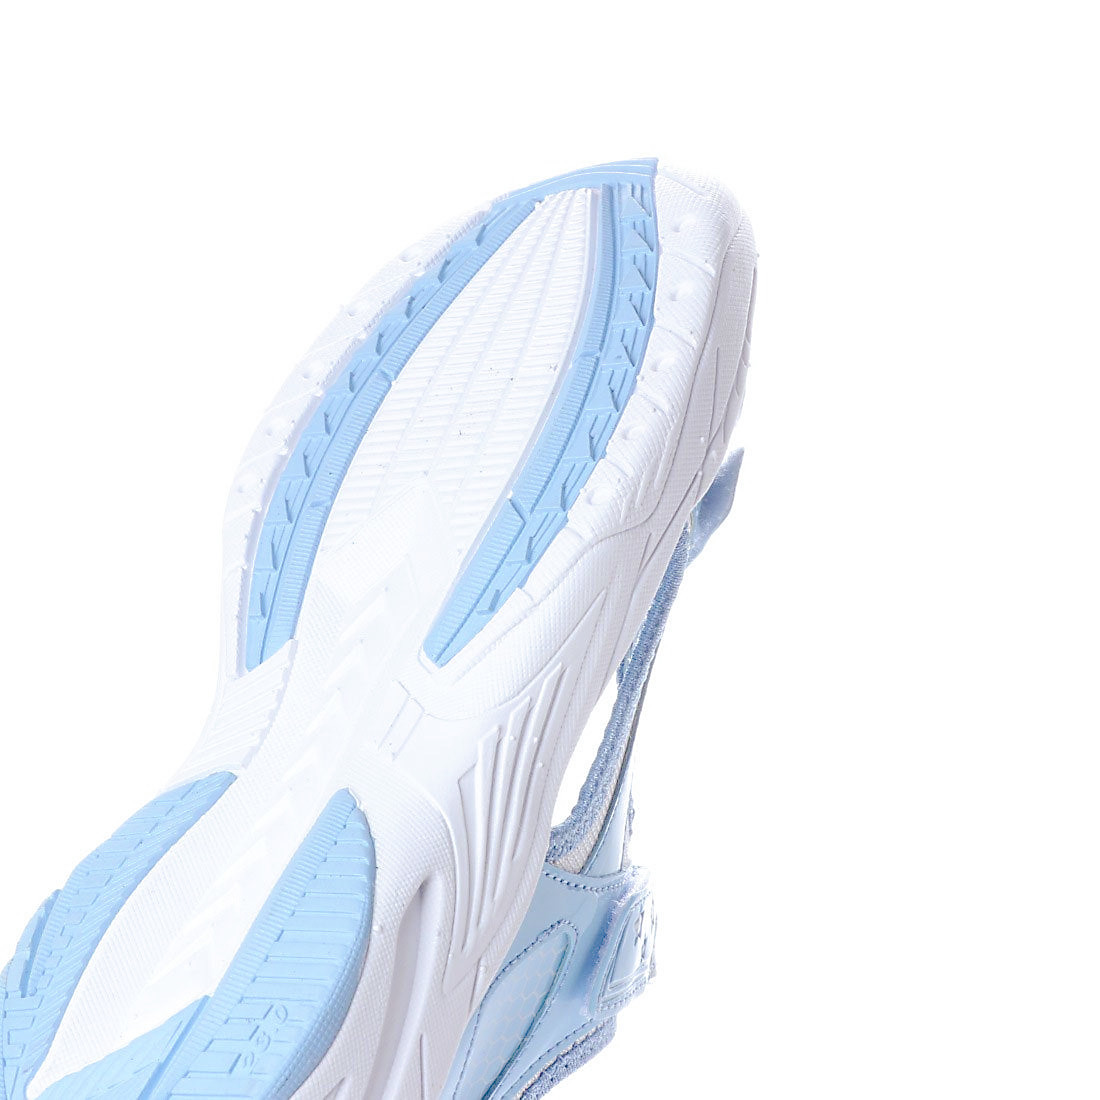  бесплатная доставка![17915-SAX-230] Kids для спорт сандалии легкий &. скользить низ текстильная застёжка модель 